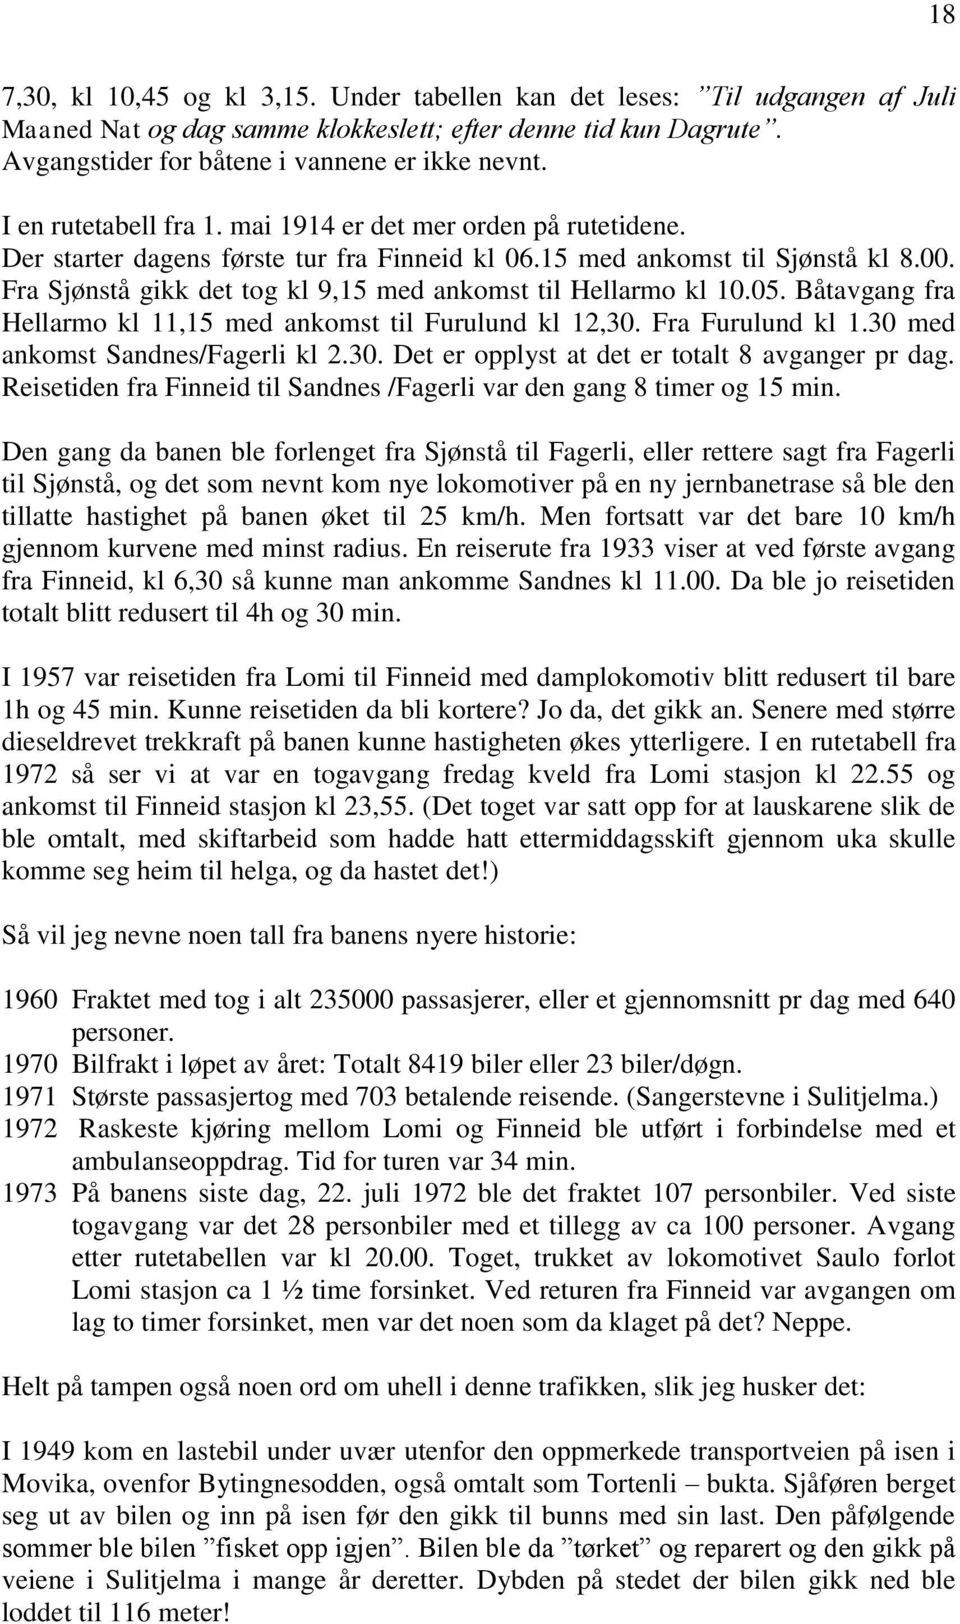 Fra Sjønstå gikk det tog kl 9,15 med ankomst til Hellarmo kl 10.05. Båtavgang fra Hellarmo kl 11,15 med ankomst til Furulund kl 12,30. Fra Furulund kl 1.30 med ankomst Sandnes/Fagerli kl 2.30. Det er opplyst at det er totalt 8 avganger pr dag.